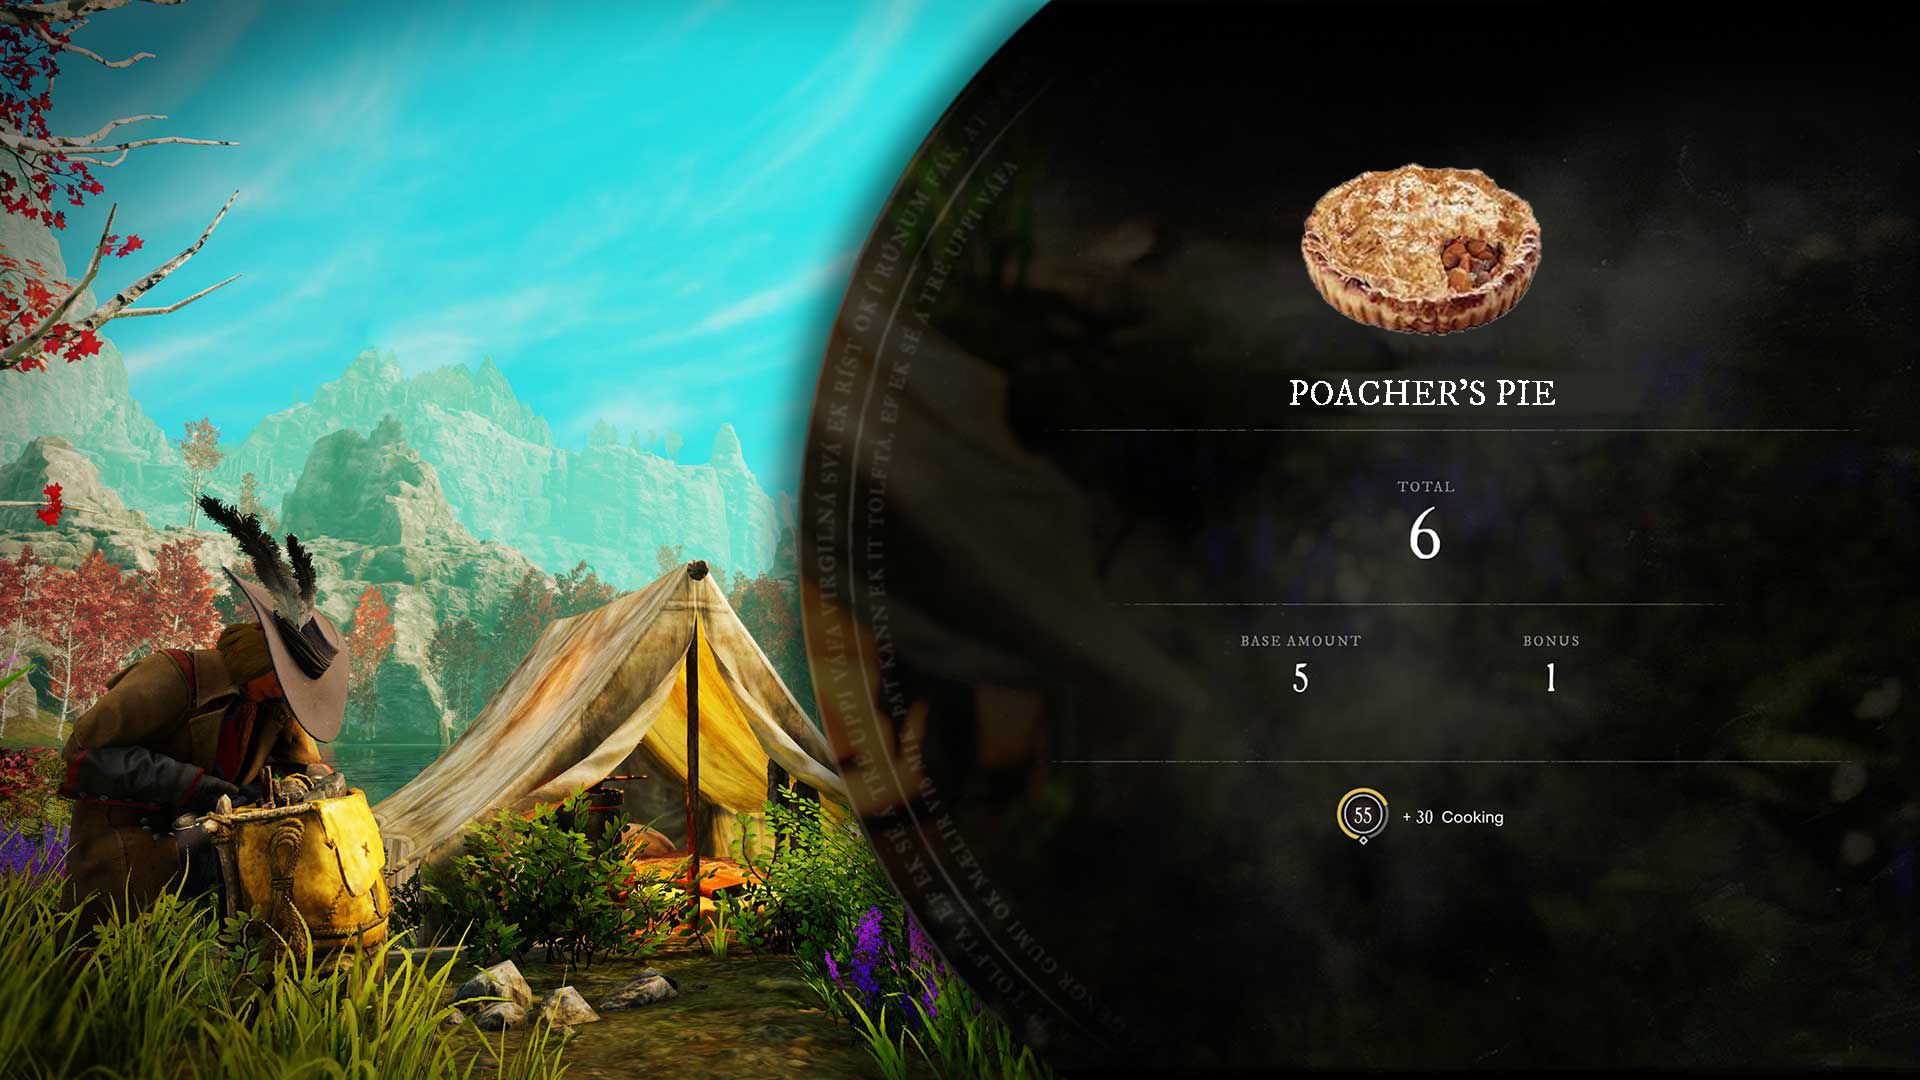 A player cooks a Poacher's Pie recipe at a campsite